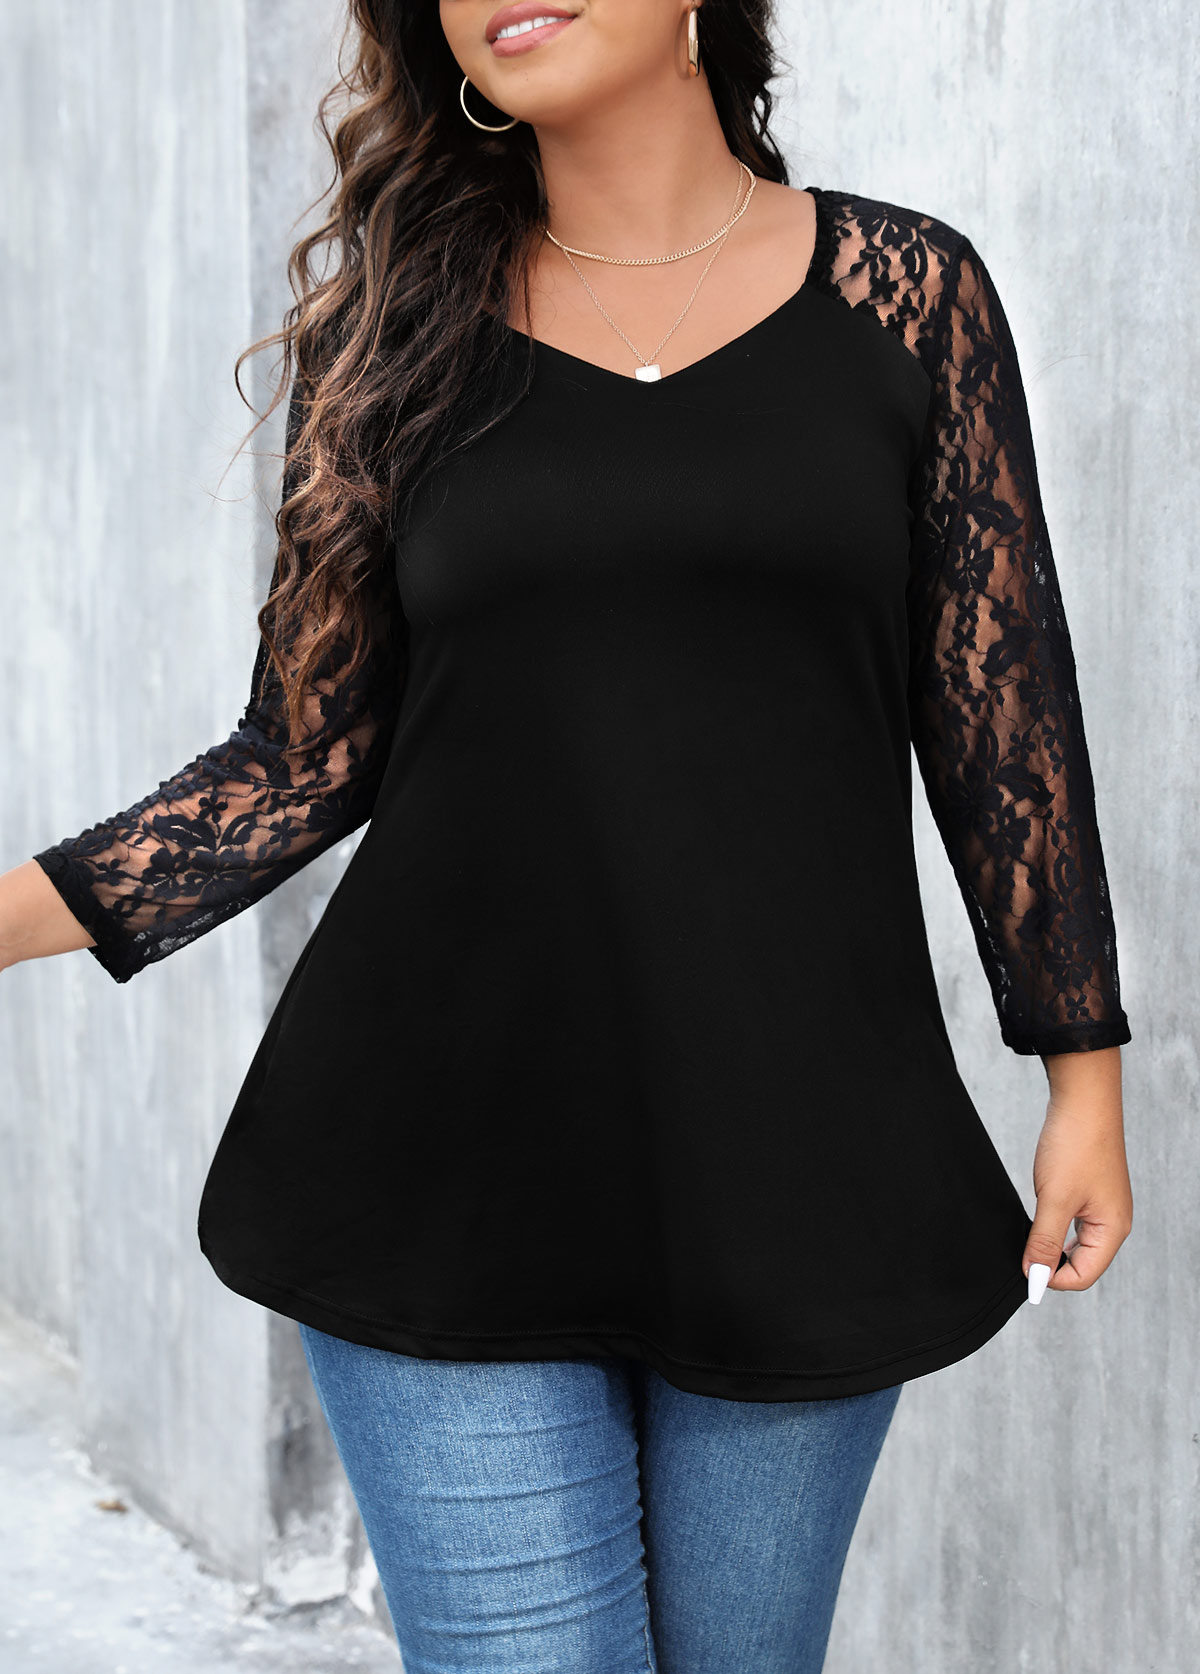 Lace Stitching Plus Size Black T Shirt